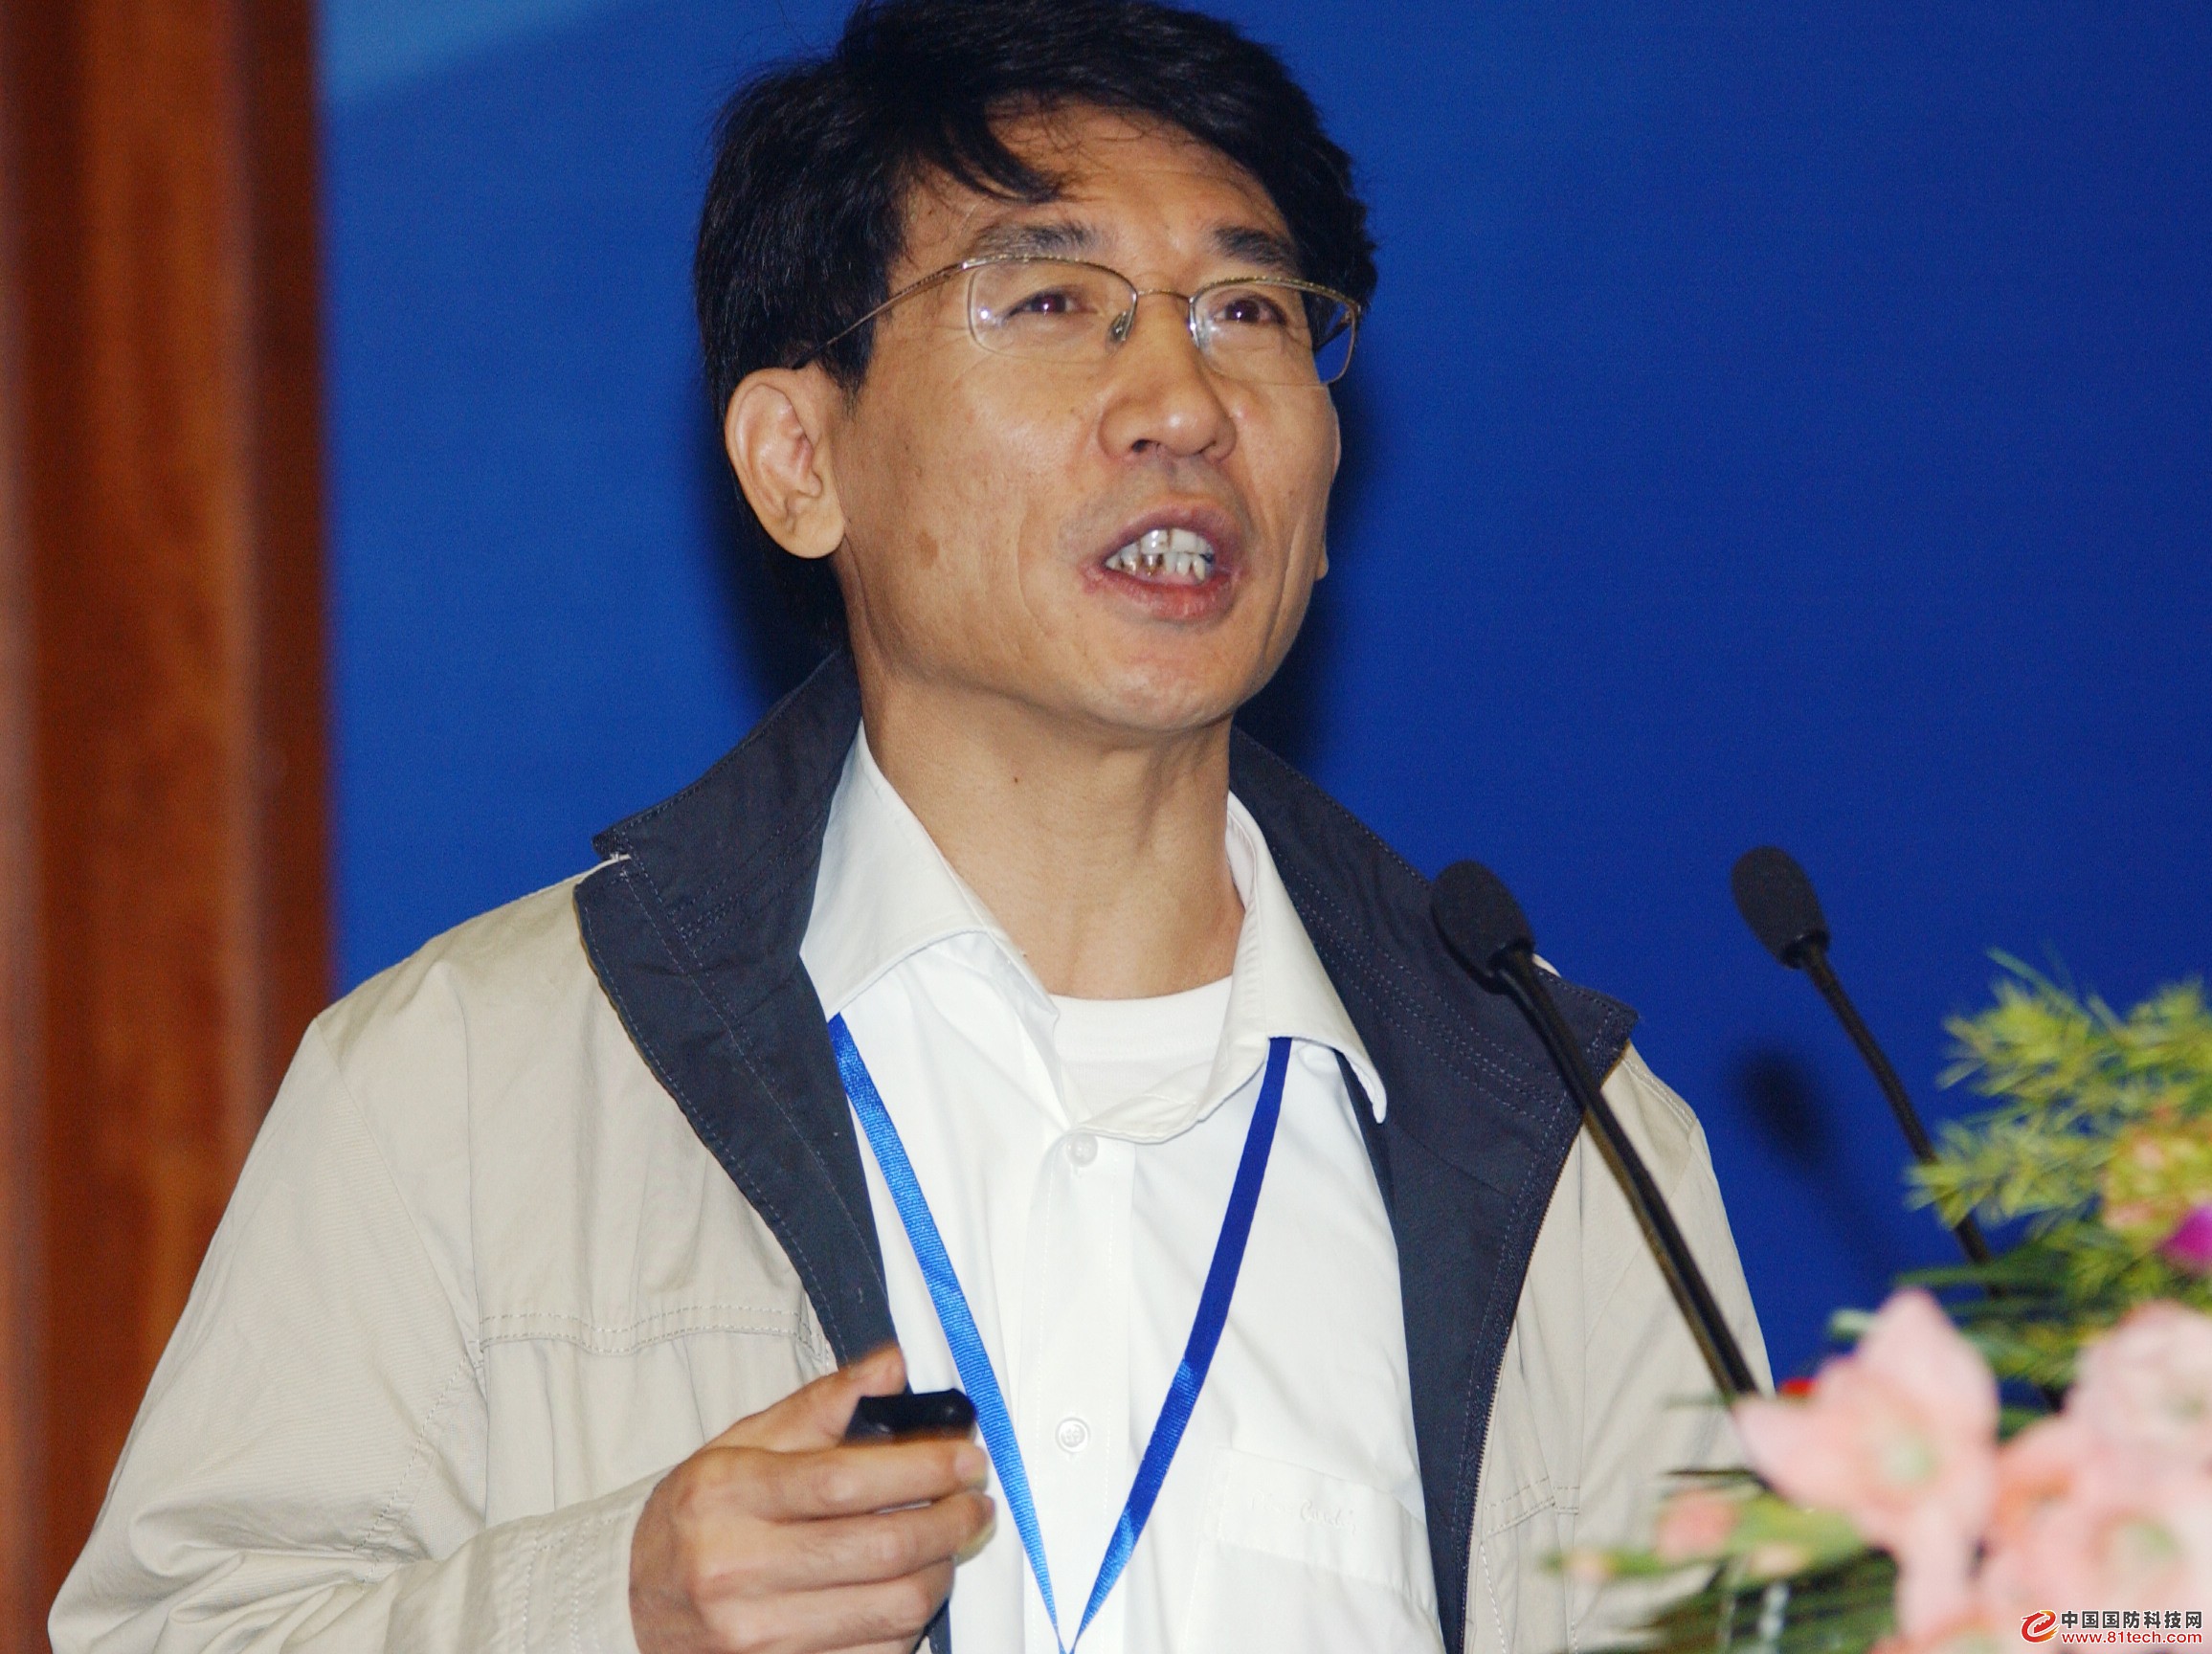 中国科学家薛其坤首次在实验上发现量子反常霍